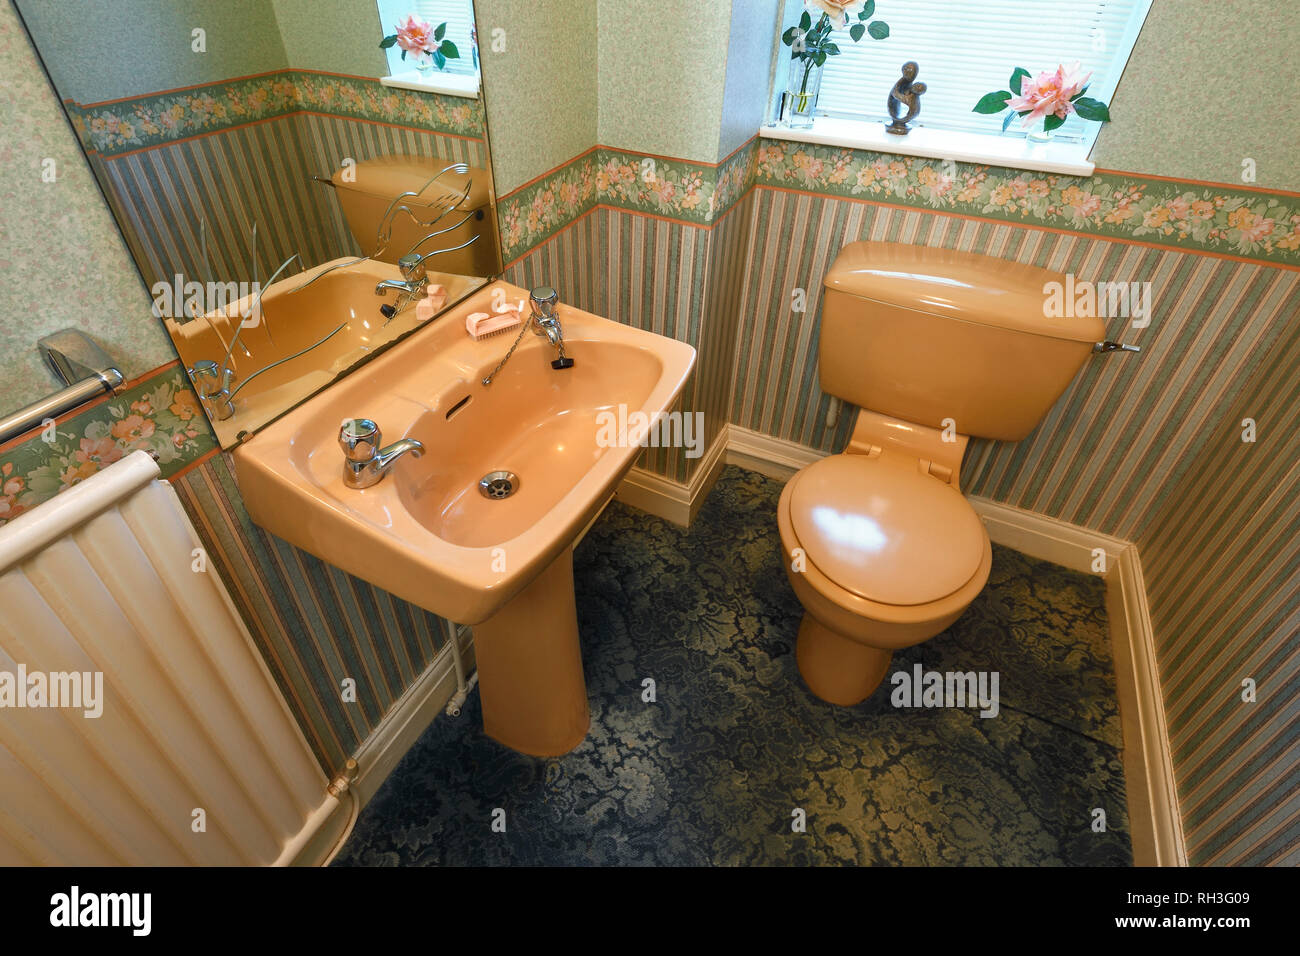 Une couleur marron à l'ancienne suite dans une des toilettes au rez-de-chaussée Banque D'Images